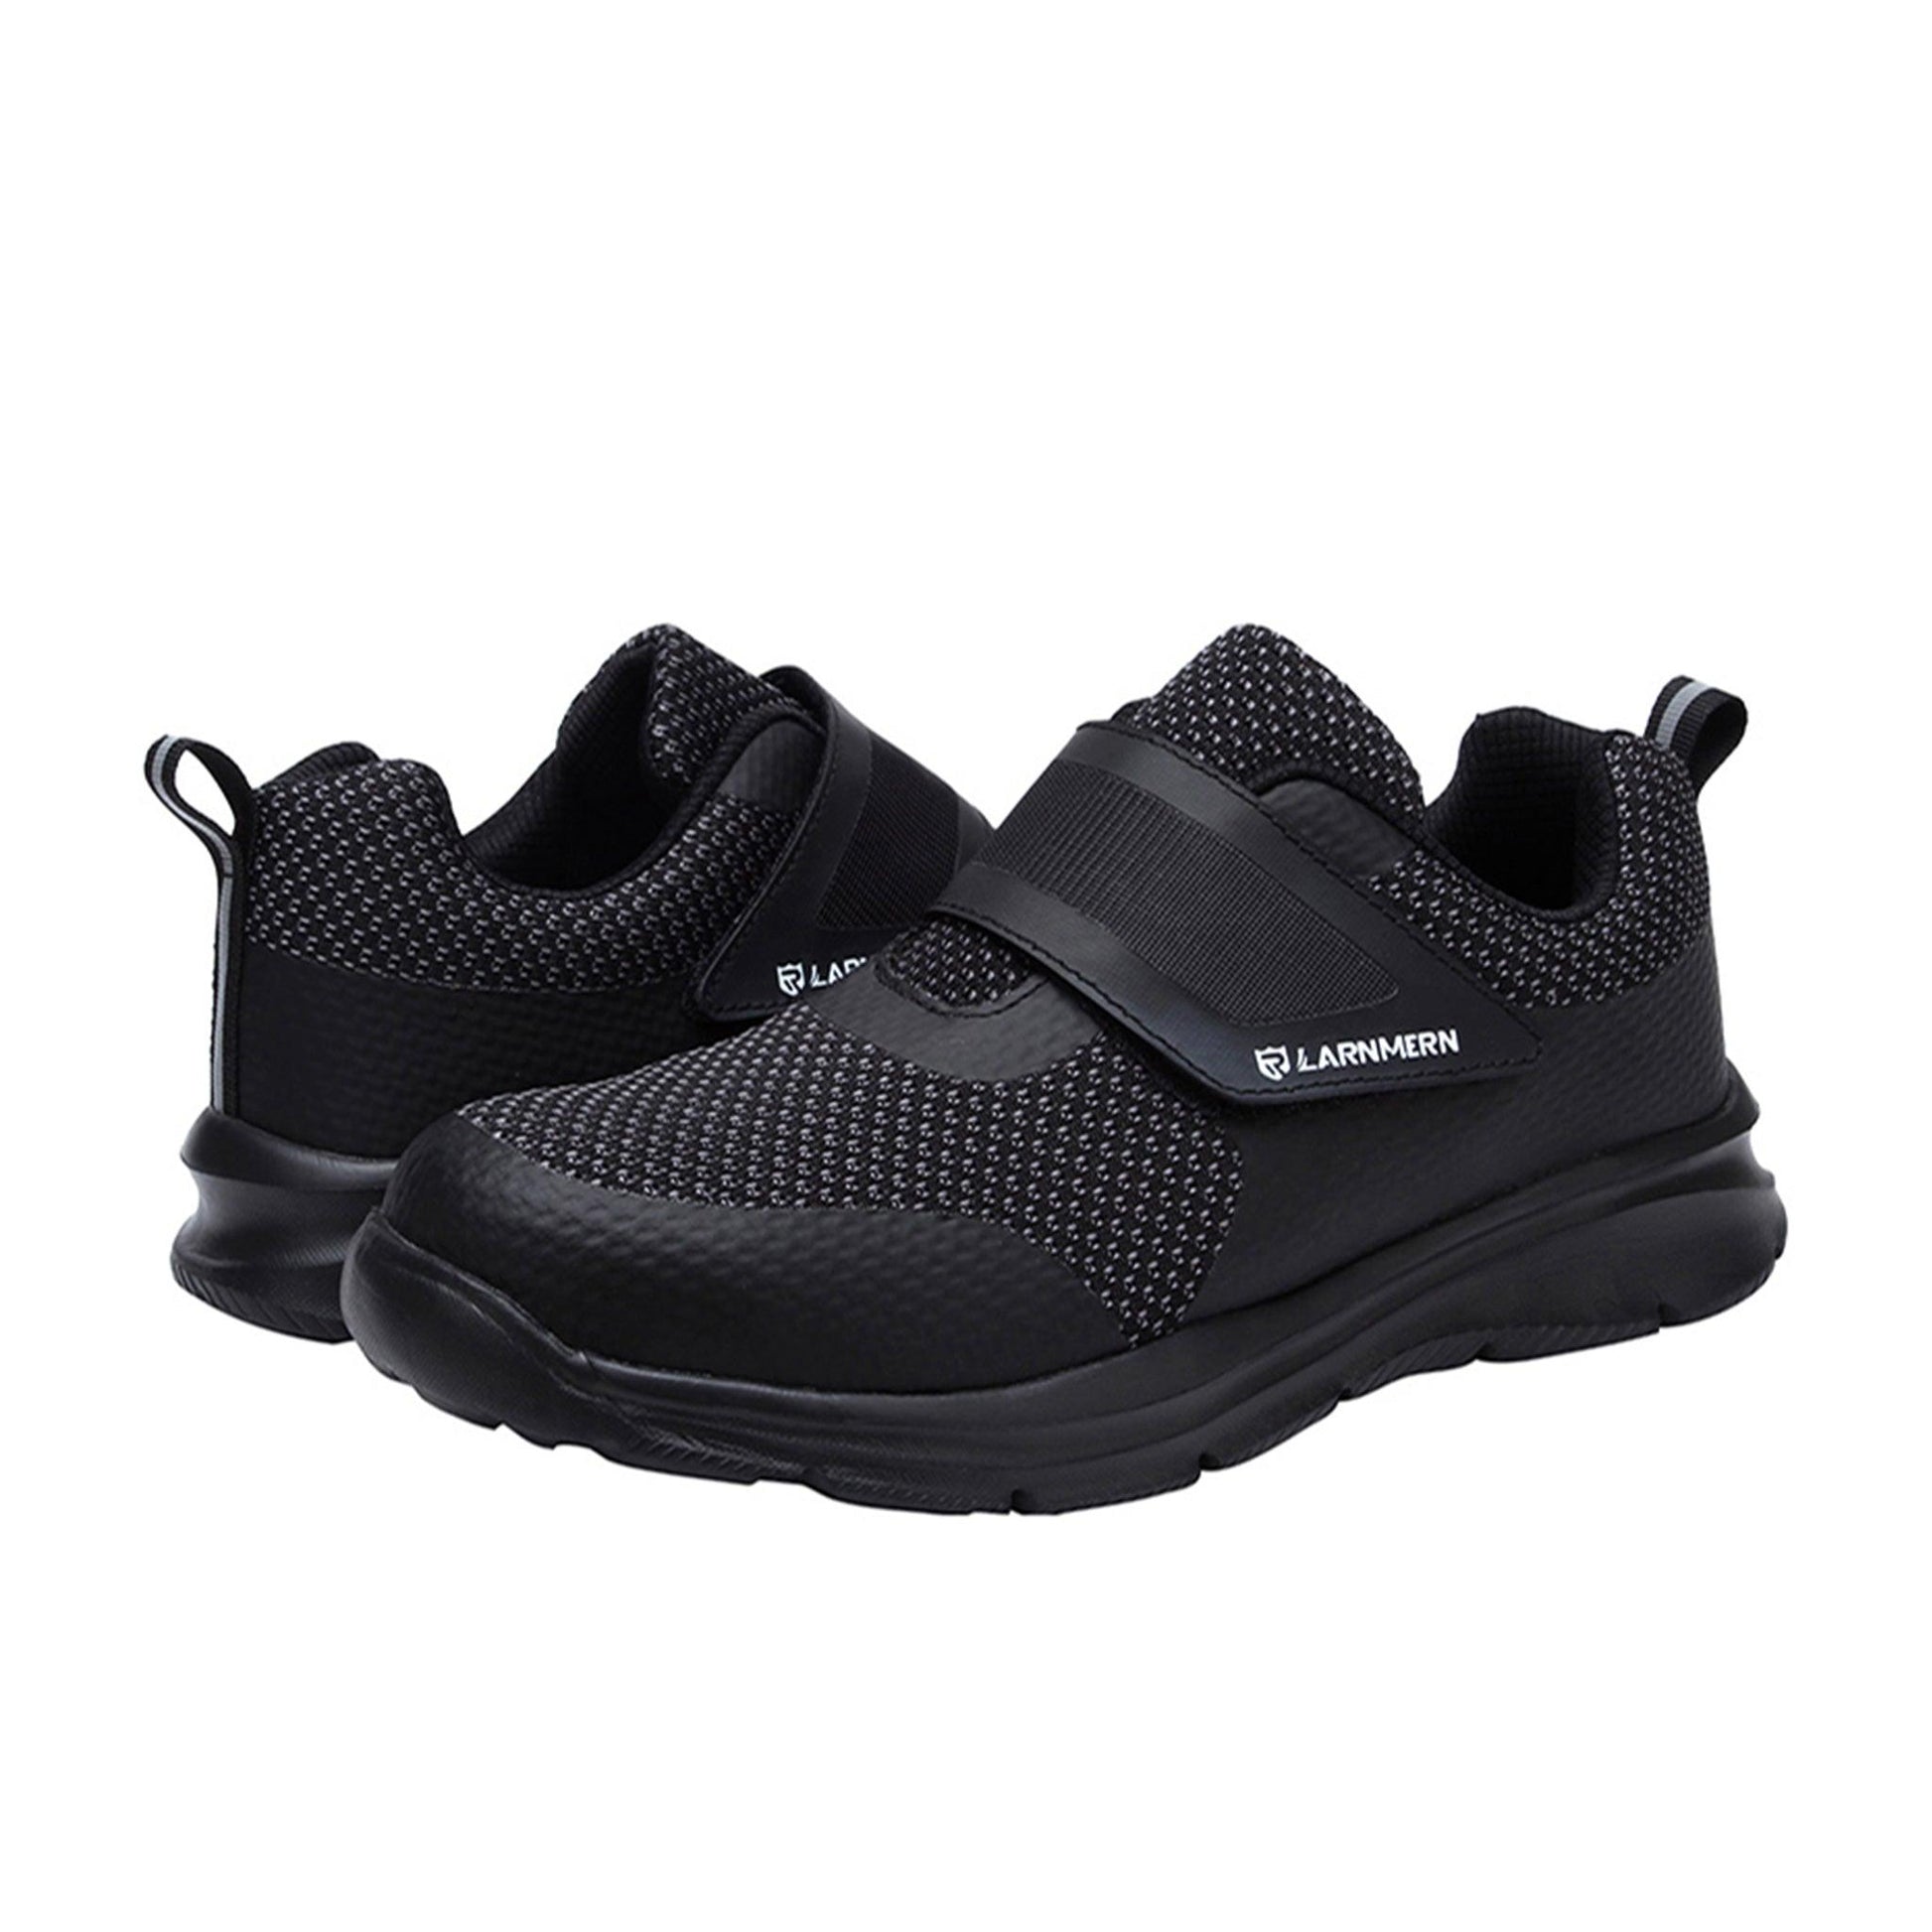 Men's Steel Toe Sneaker - Adjustable Velcro | L017 - USINE PRO Footwear